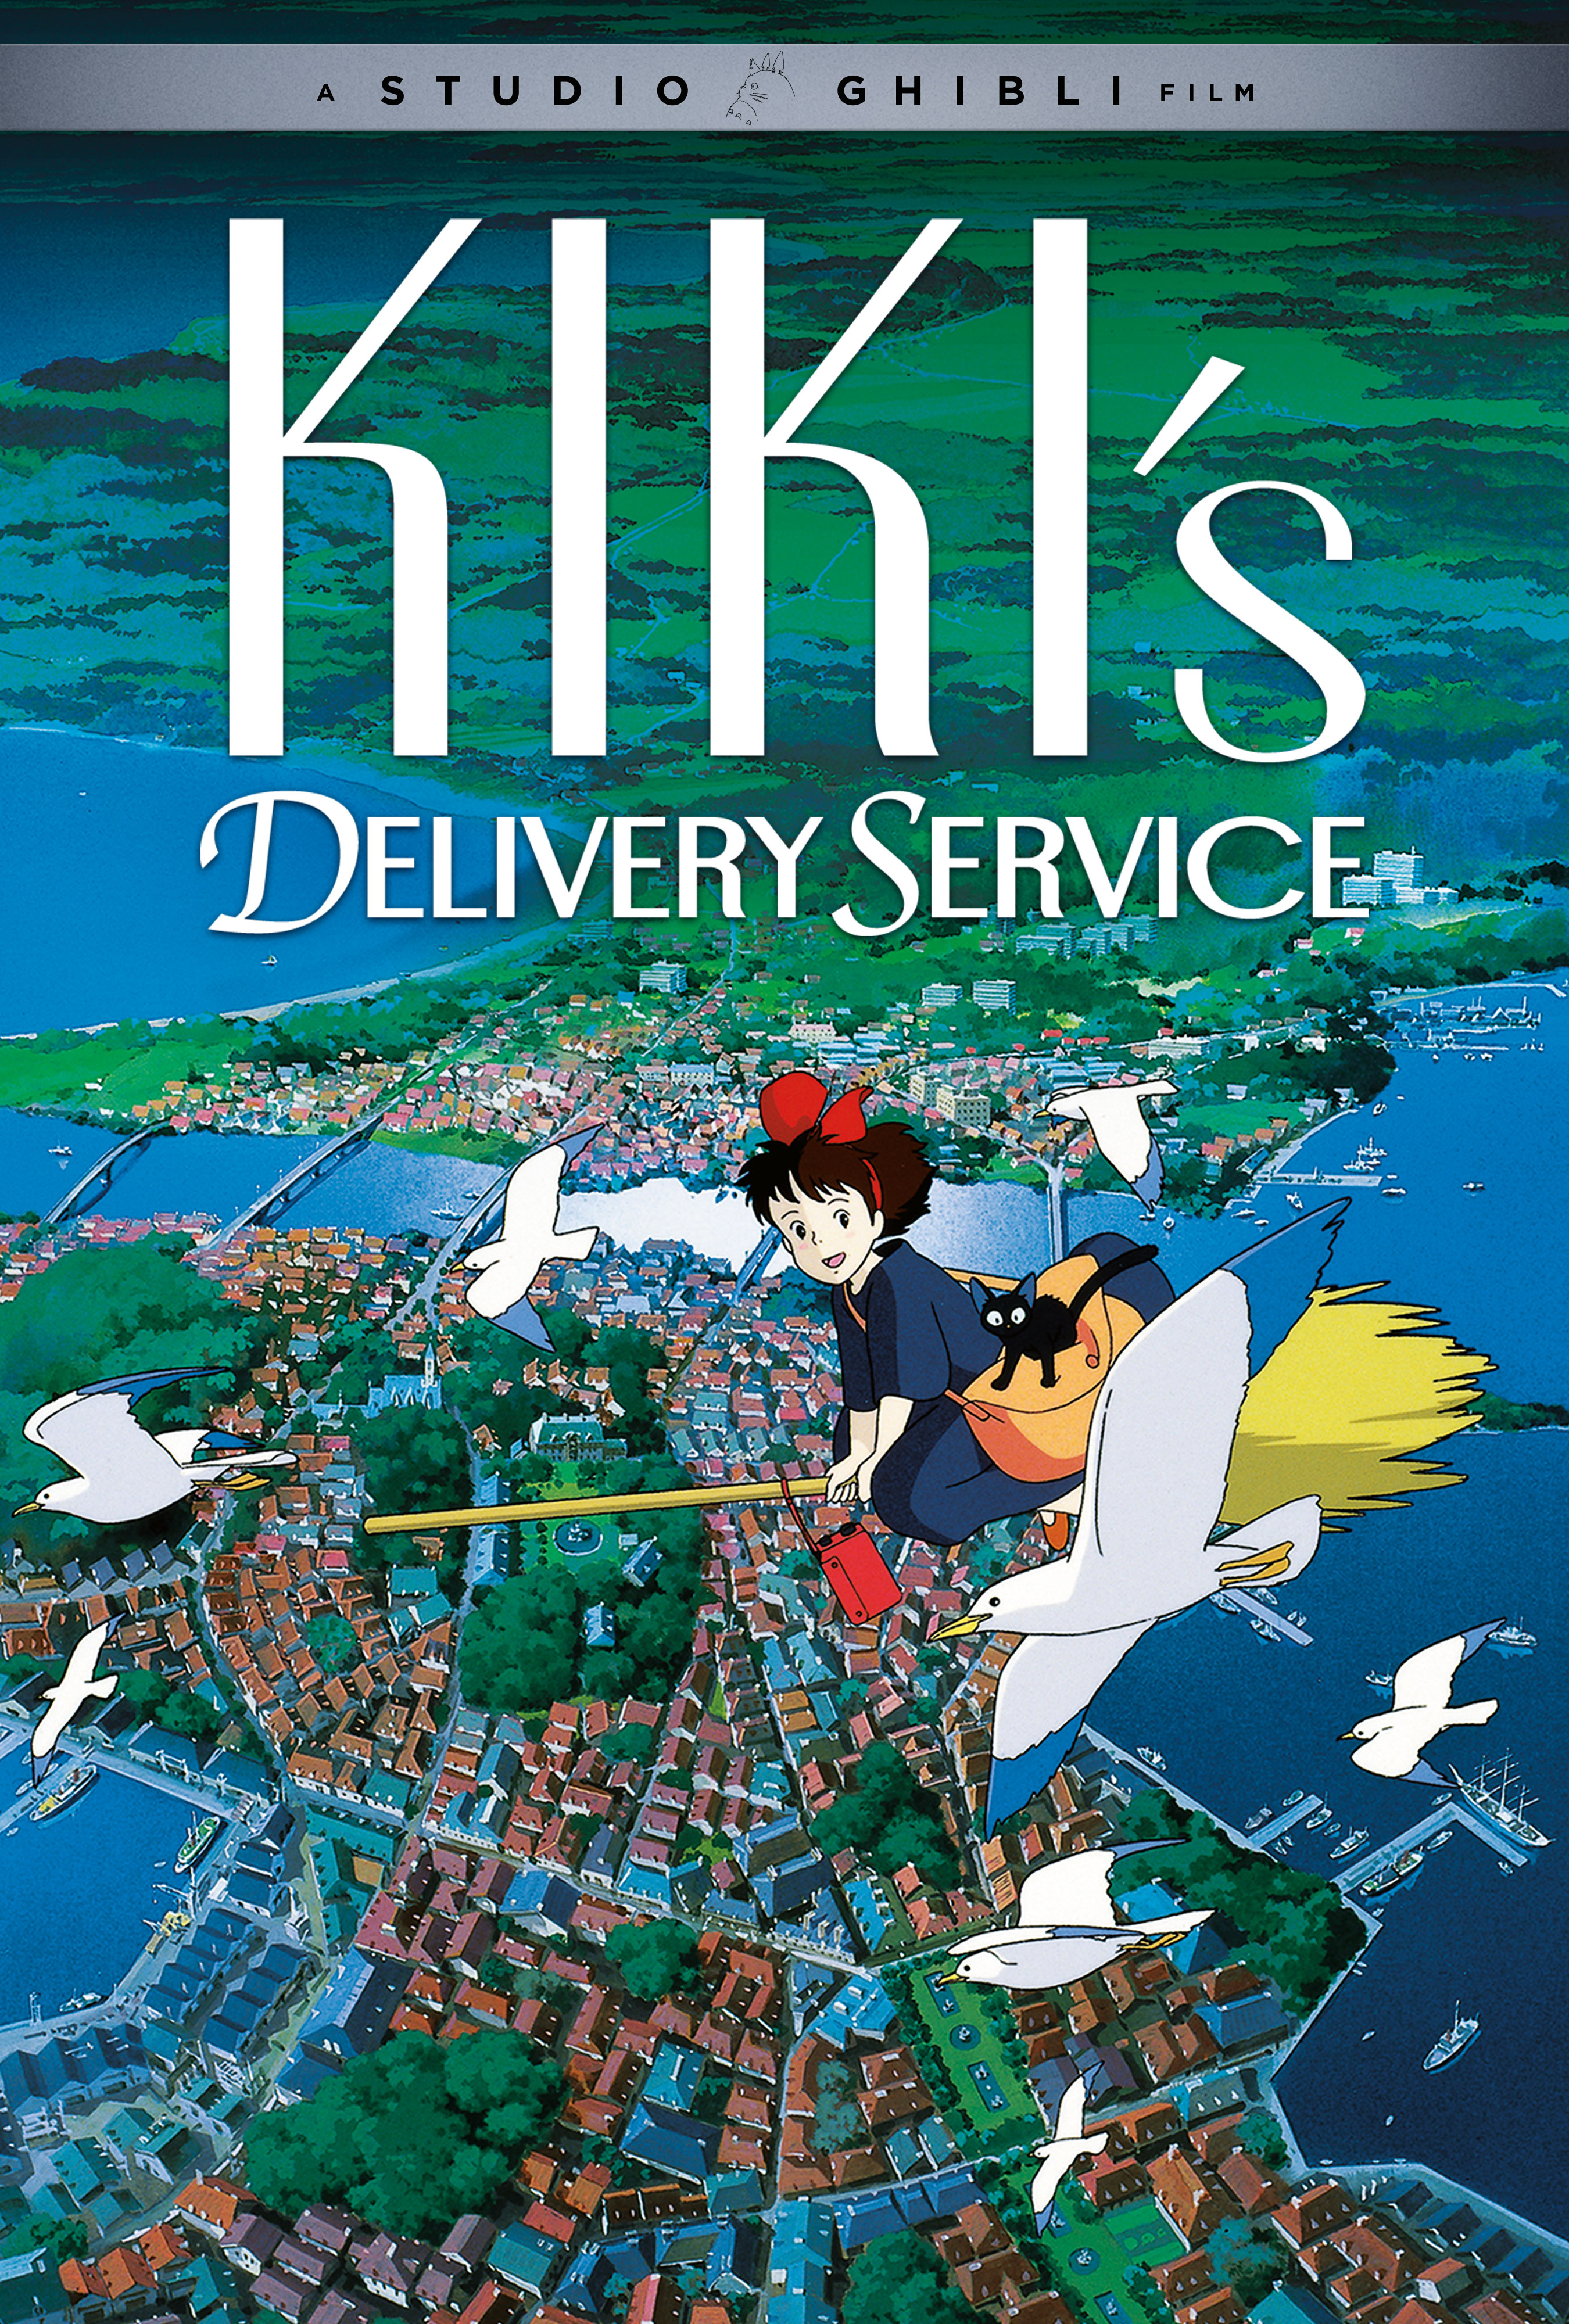 Kiki's Delivery Service Poster